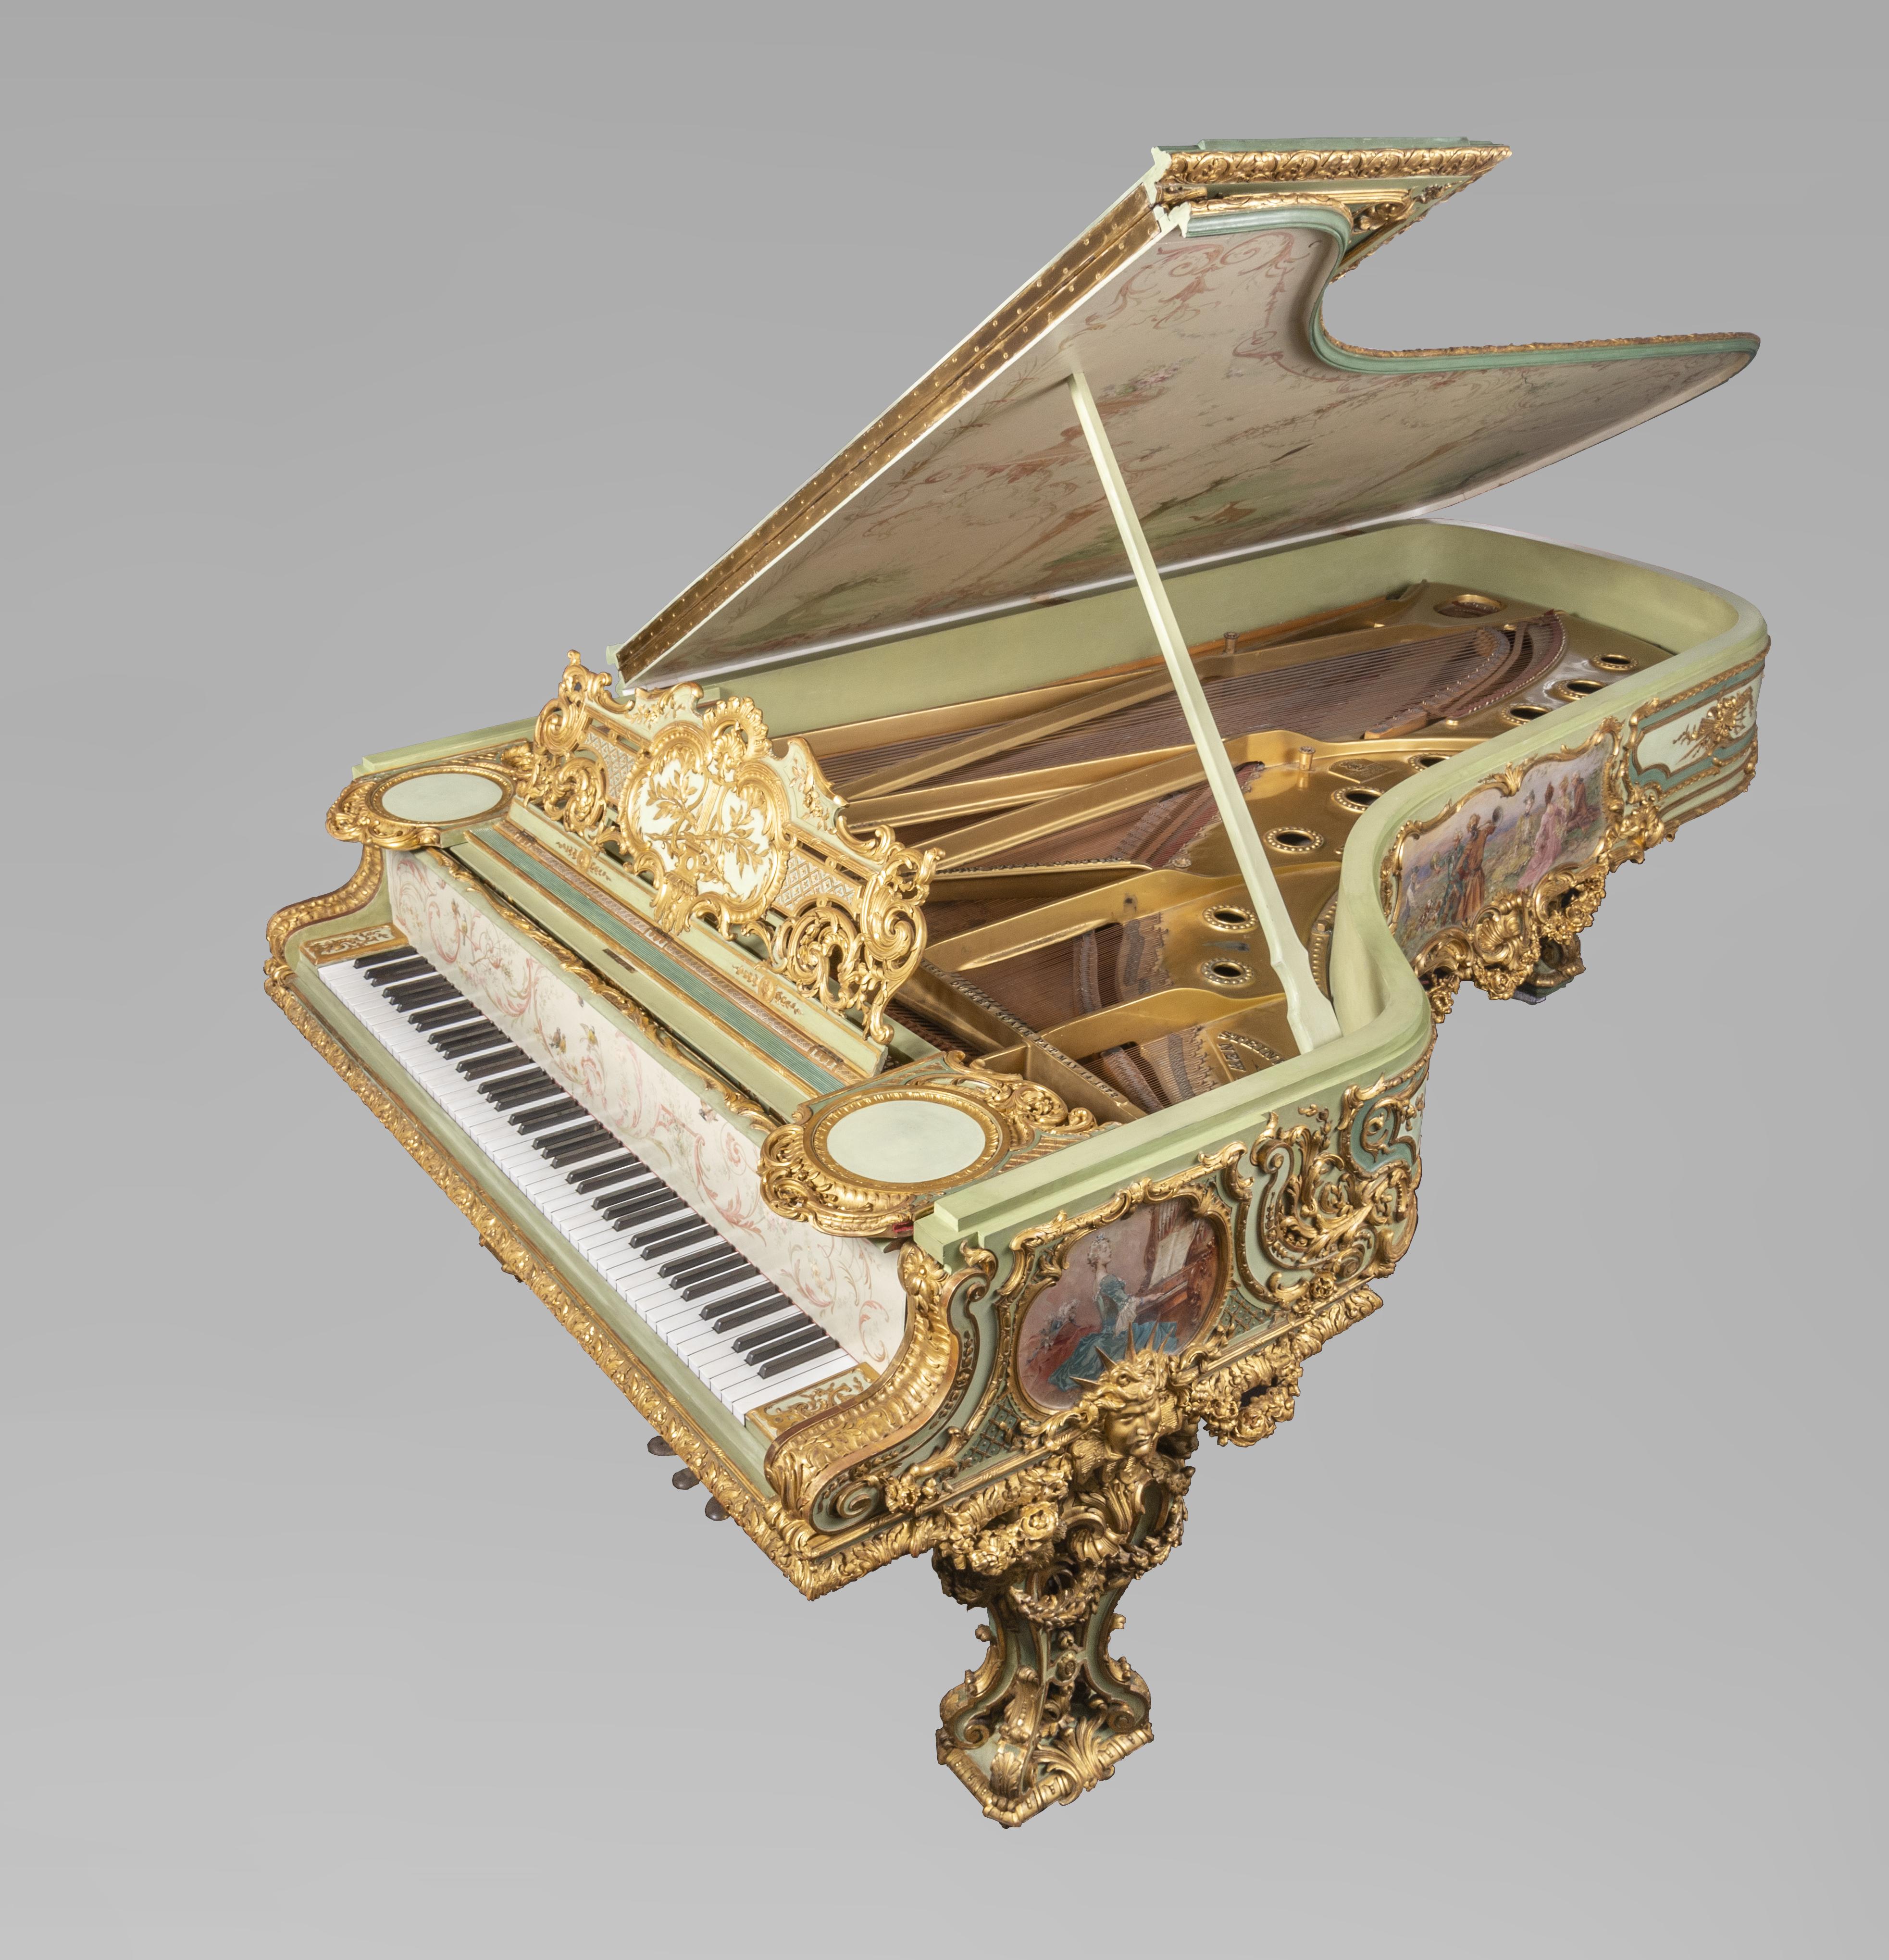 Cet extraordinaire piano à queue de concert de 88 touches a été fabriqué par la prestigieuse firme Steinway & Sons vers 1894. La décoration de la caisse a été confiée à la société Cuel & Cie et plus précisément à Th. Kammerer.
La commande a été